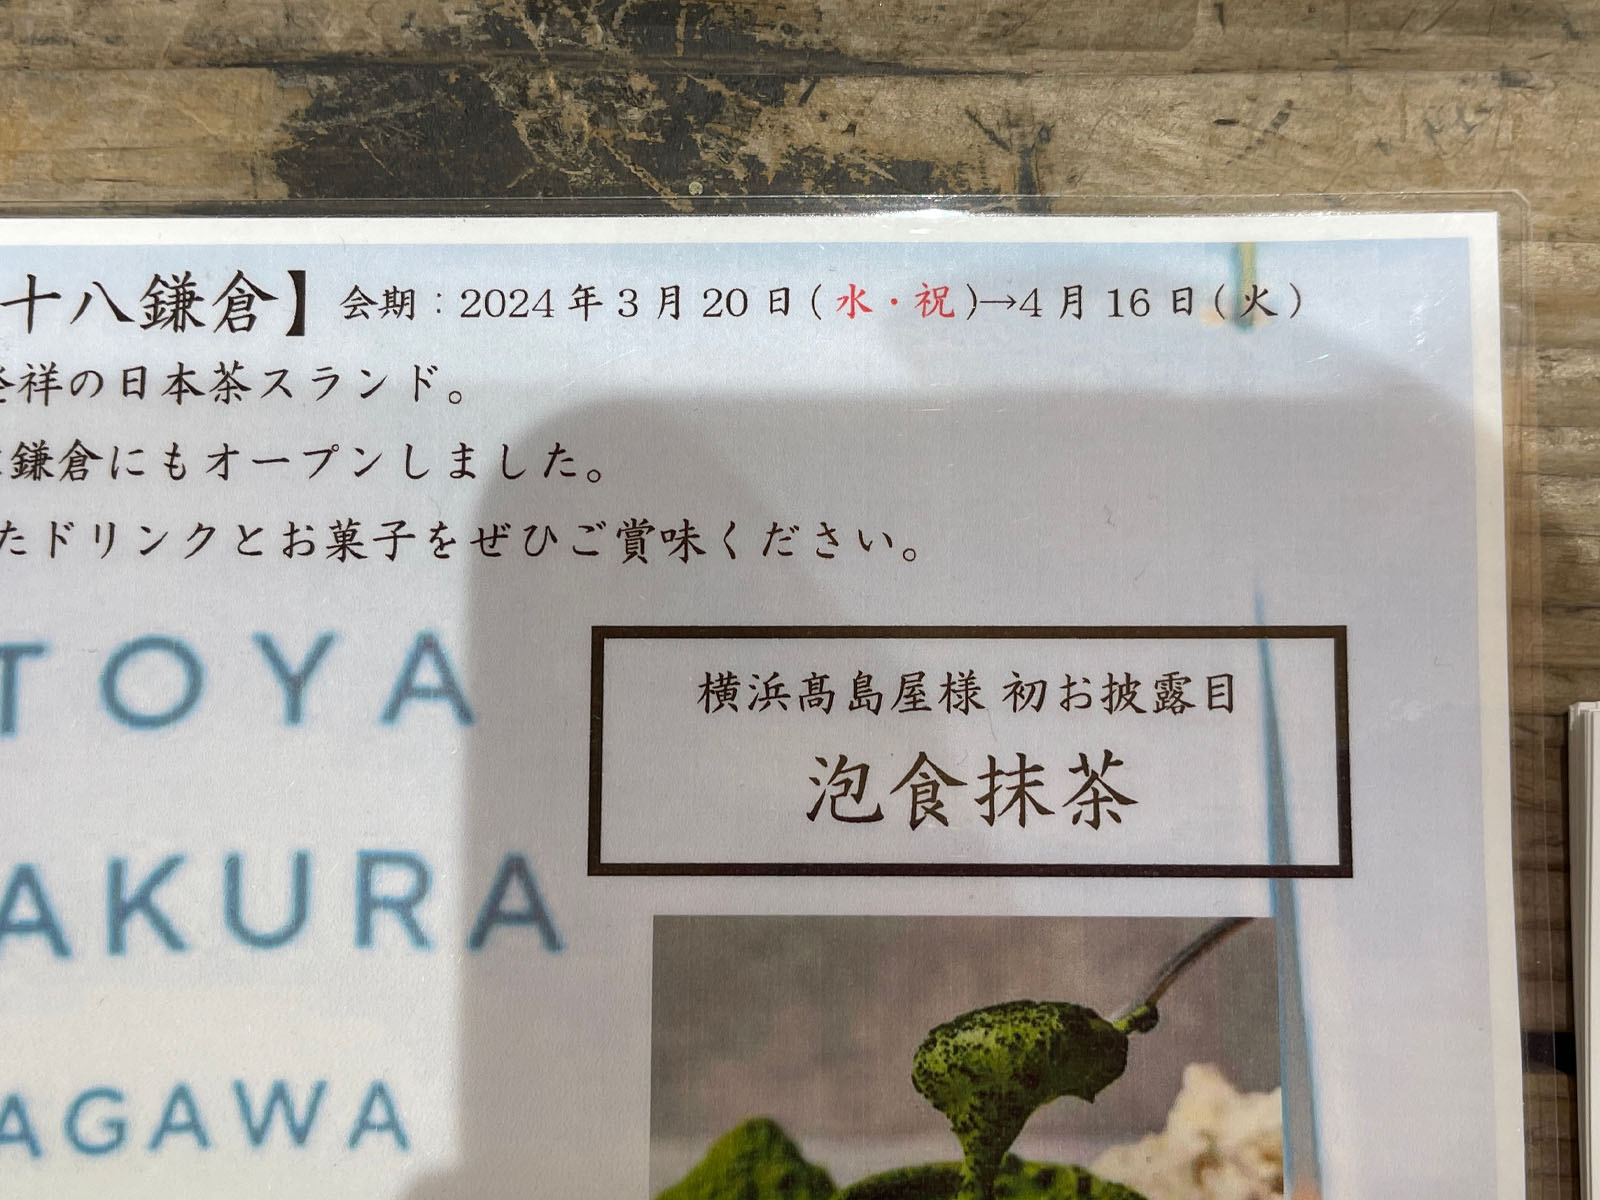 日本茶スタンド「八十八鎌倉(はとやかまくら)」が横浜高島屋に期間限定でオープン！